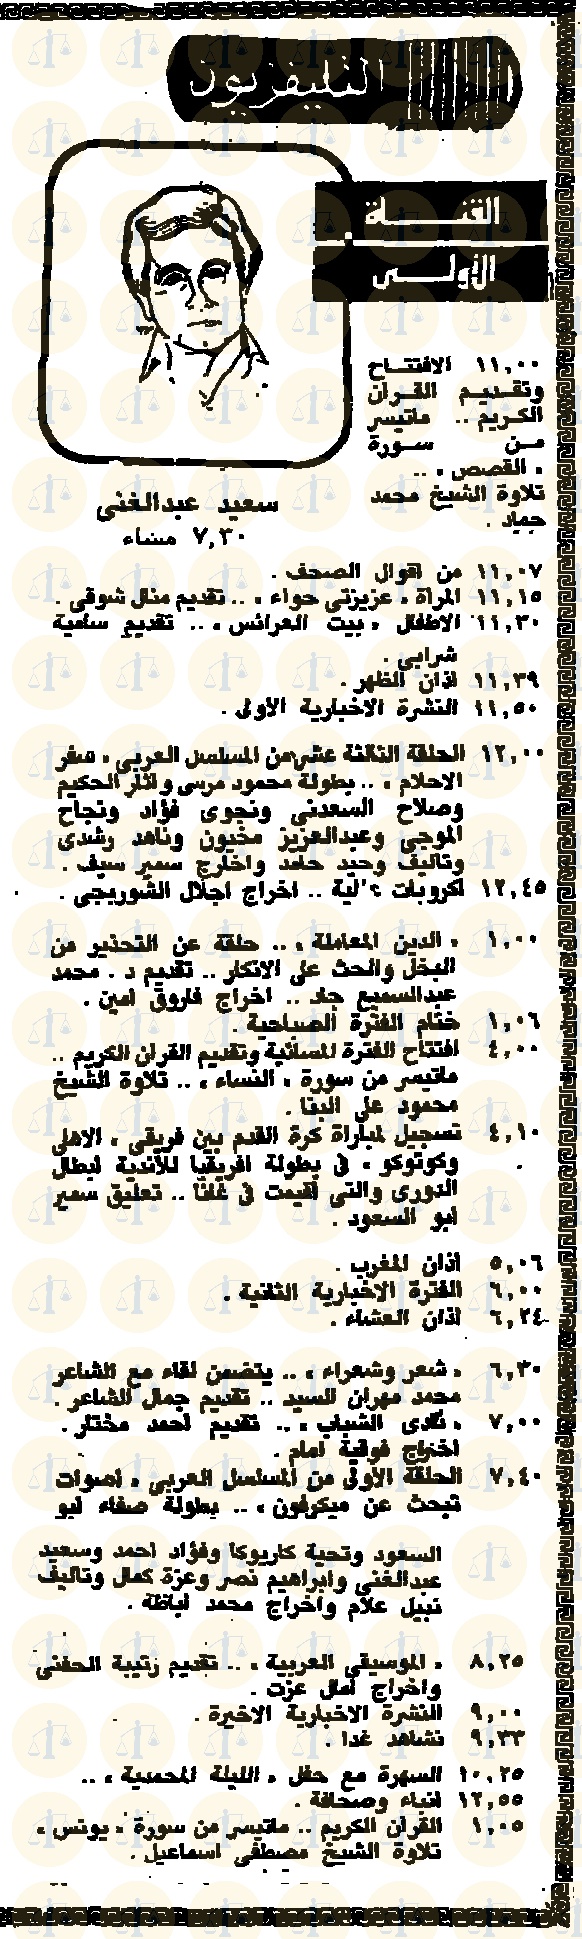 جريدة الأخبار 5 نوفمبر 1987 م وفقرات القناة الأولى